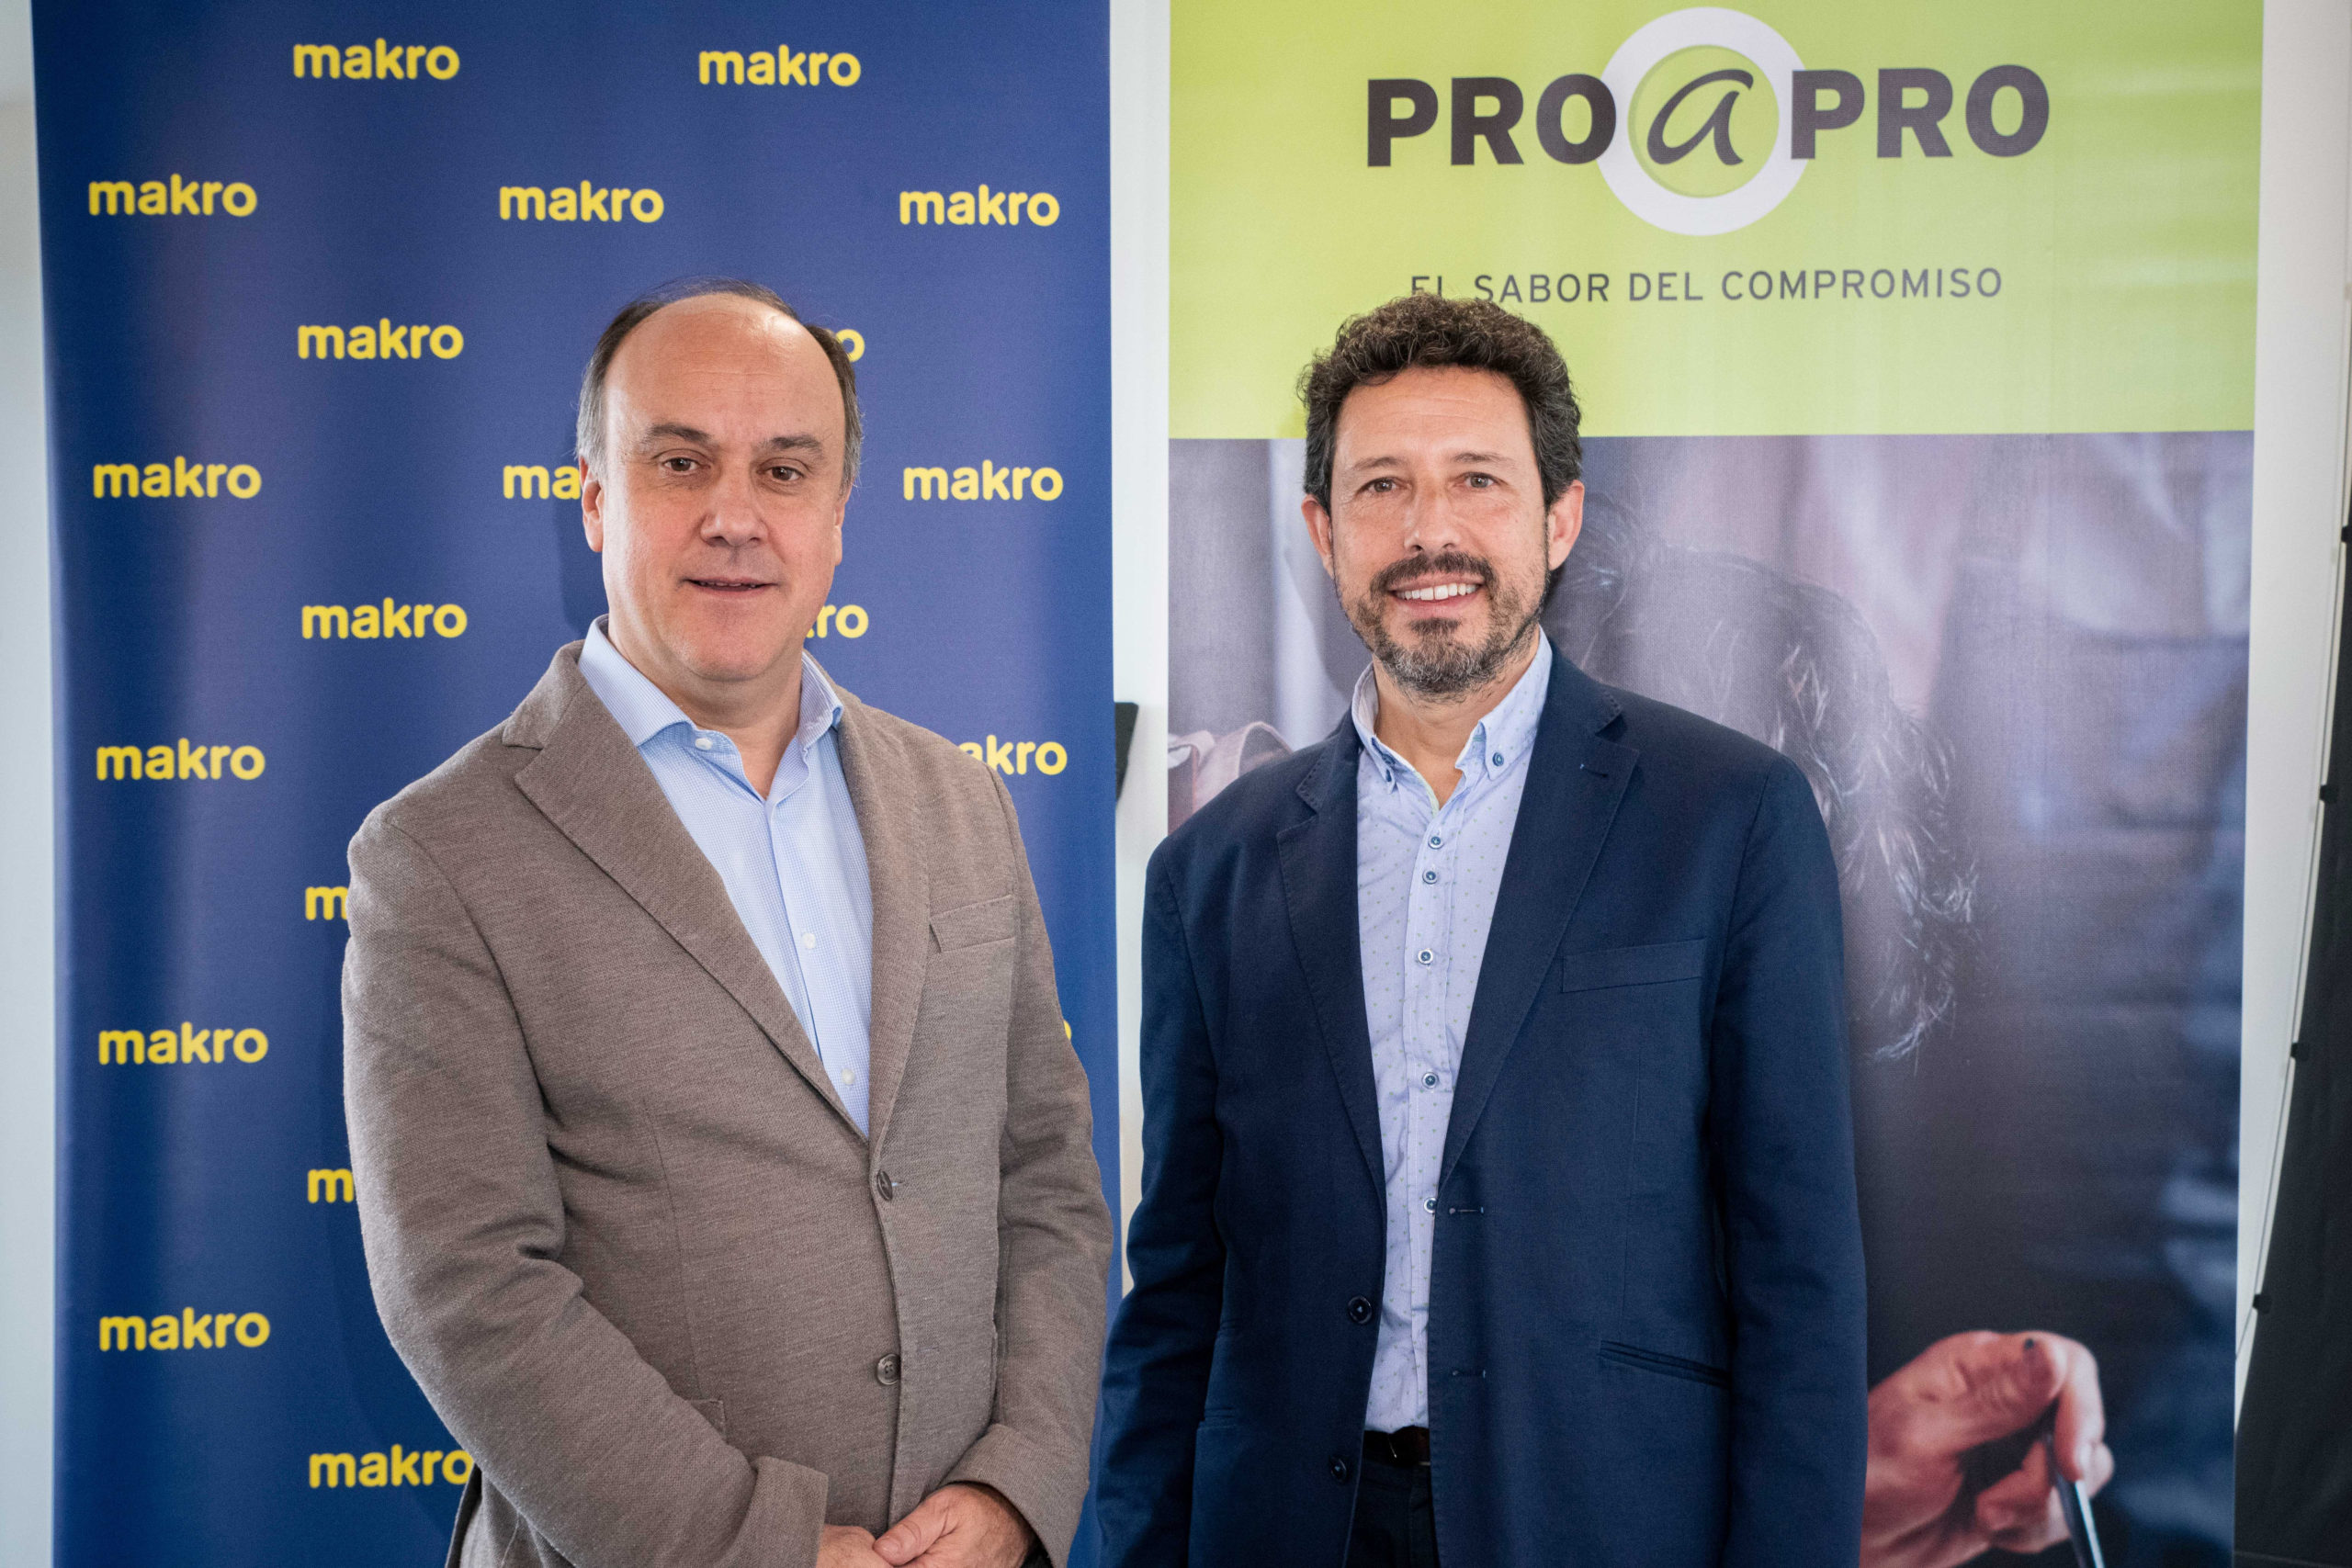 Pro a Pro impulsará sus operaciones en España para la hostelería organizada